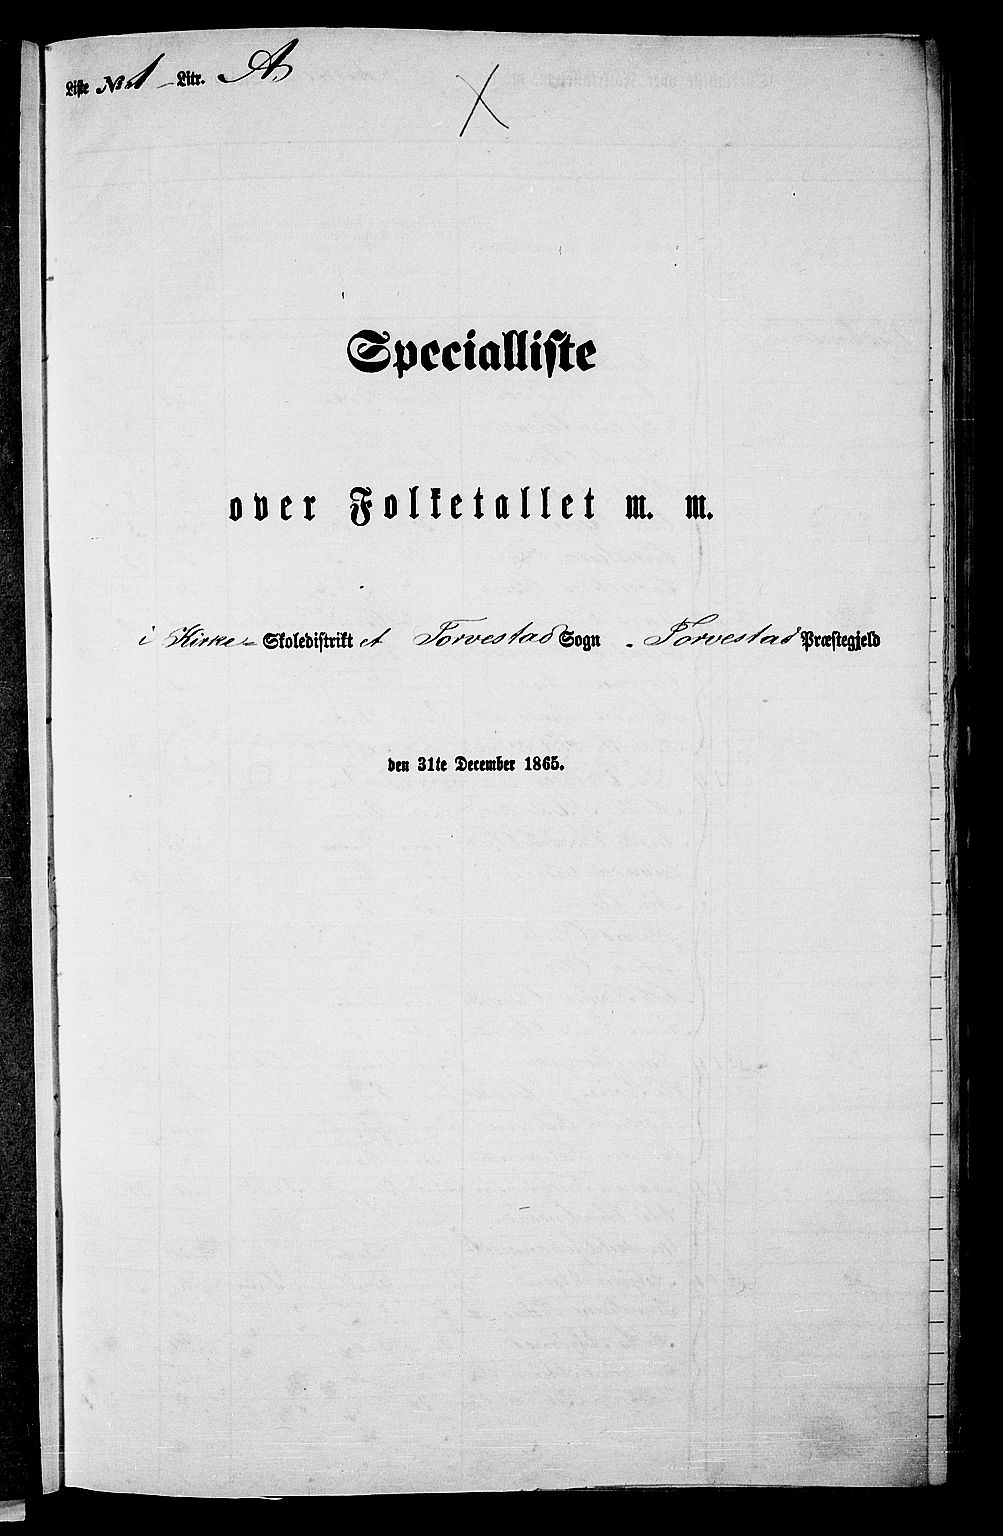 RA, Folketelling 1865 for 1152L Torvastad prestegjeld, Torvastad sokn, Skåre sokn og Utsira sokn, 1865, s. 16